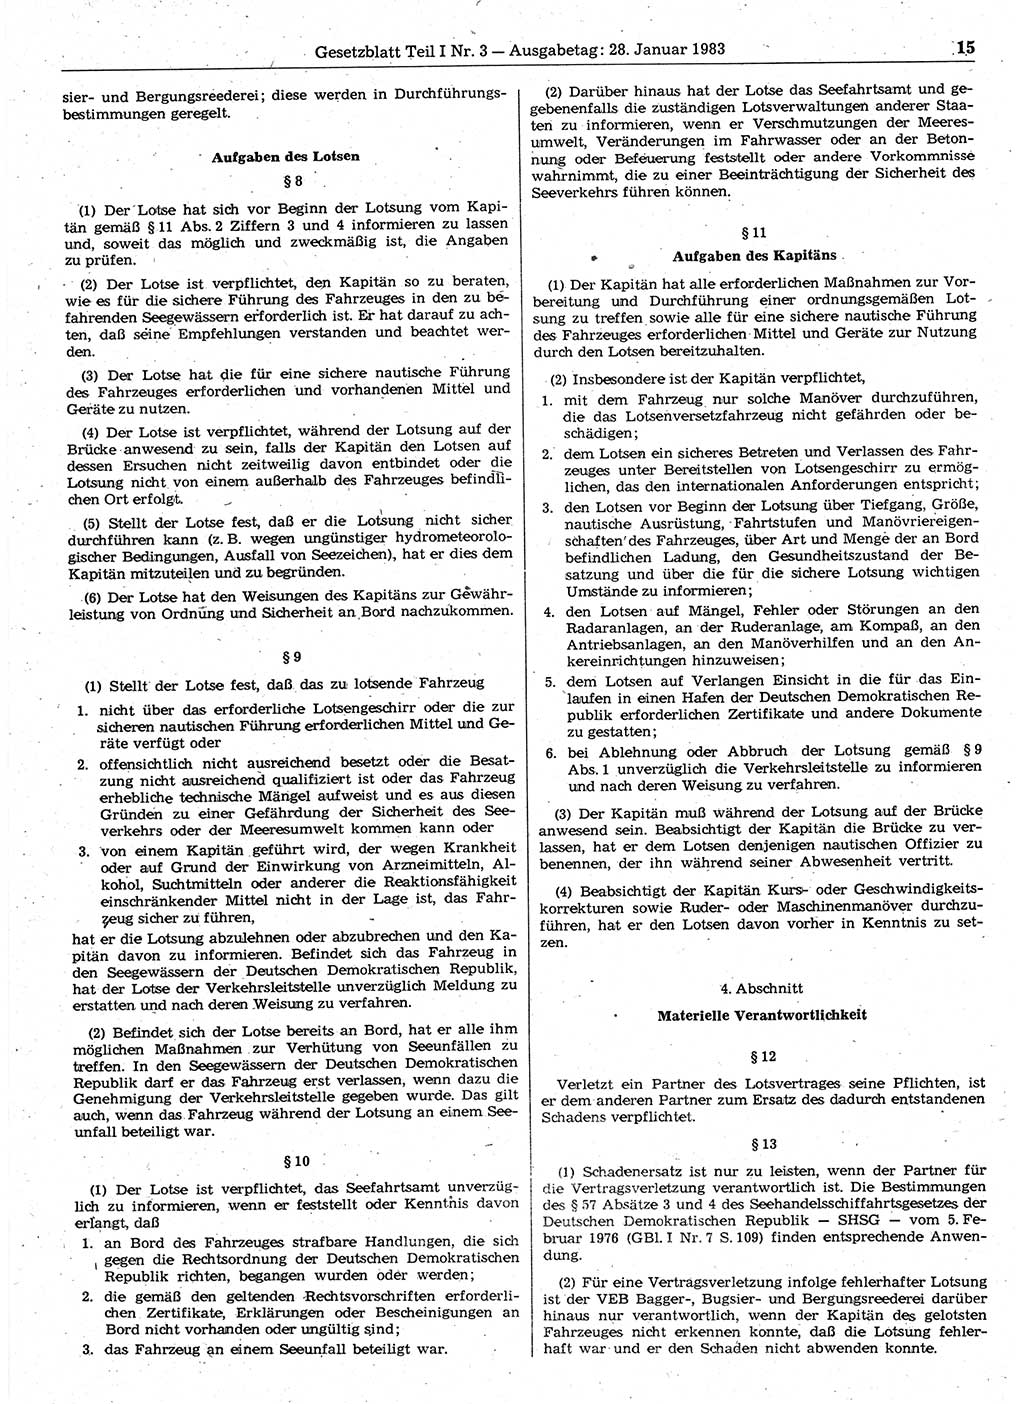 Gesetzblatt (GBl.) der Deutschen Demokratischen Republik (DDR) Teil Ⅰ 1983, Seite 15 (GBl. DDR Ⅰ 1983, S. 15)